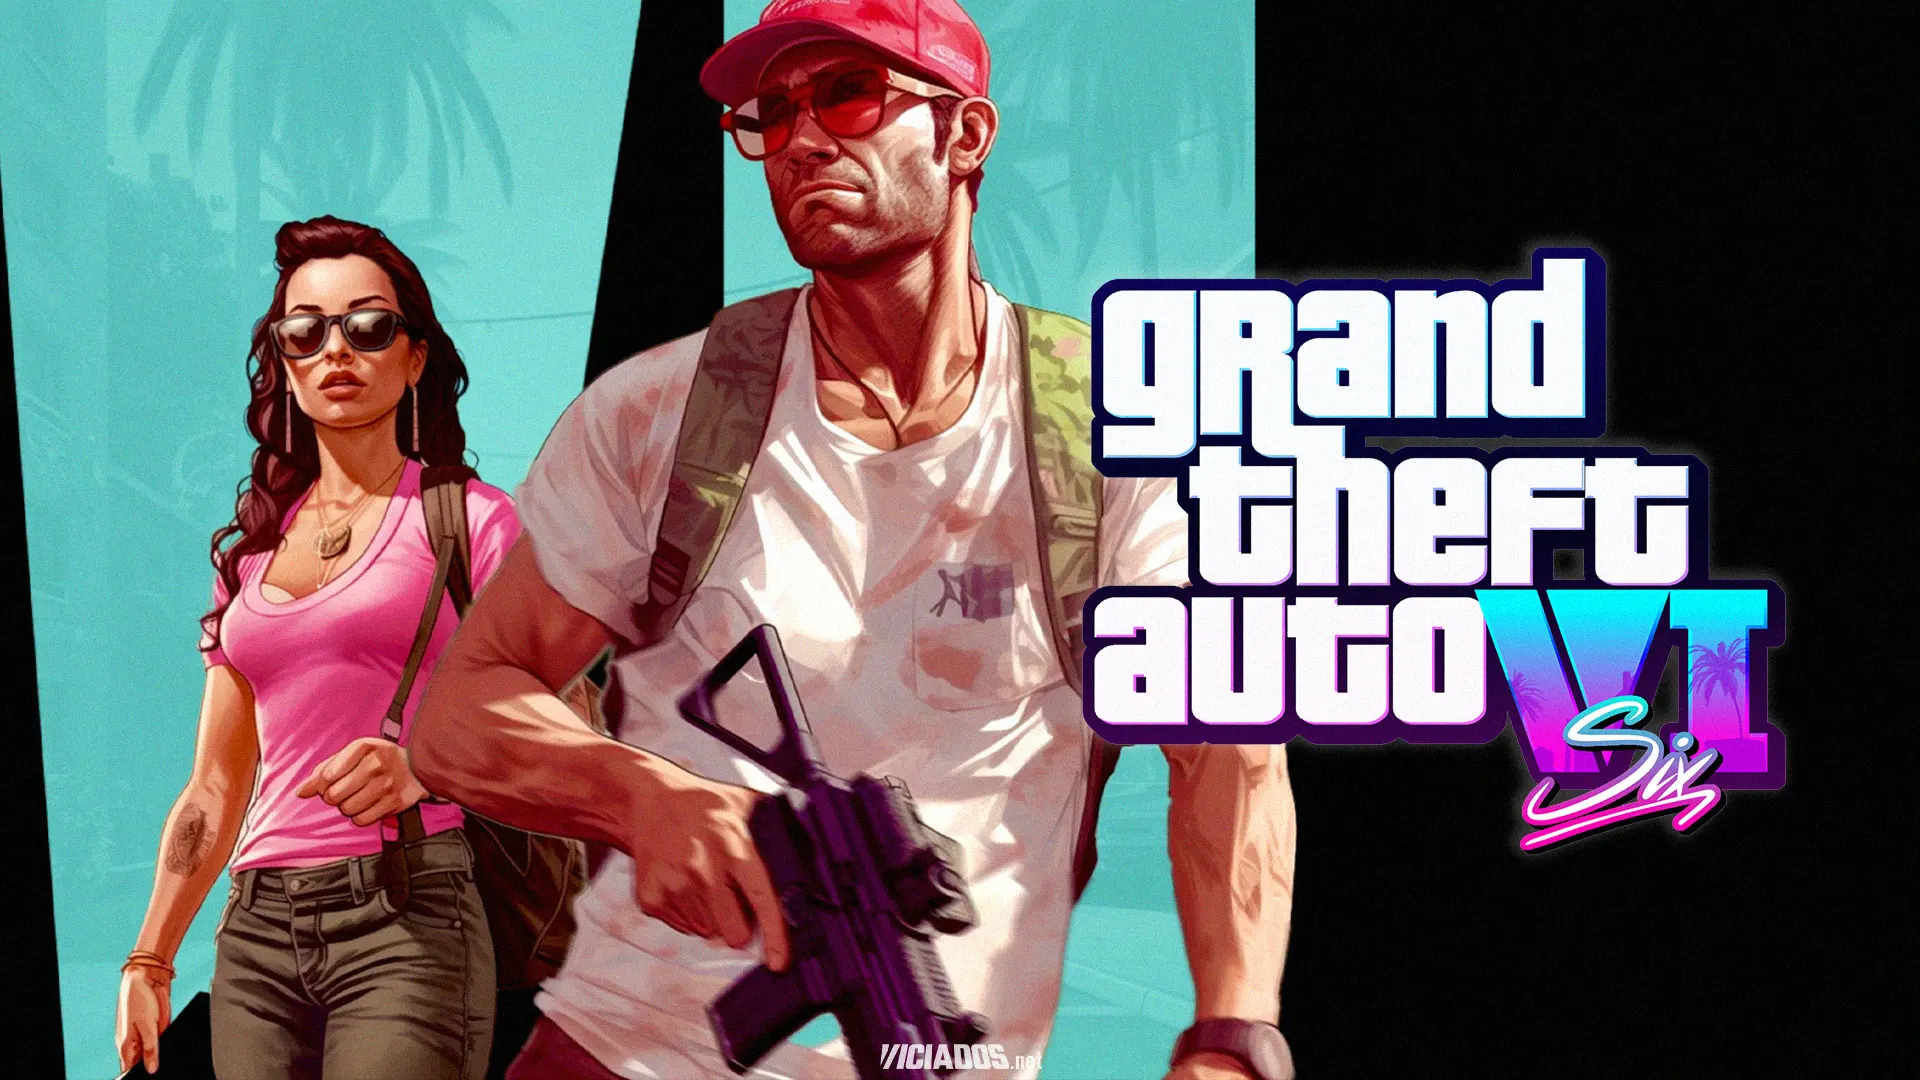 GTA 6 | Vazamento indica plataforma inédita no lançamento de Grand Theft Auto VI 2023 Viciados